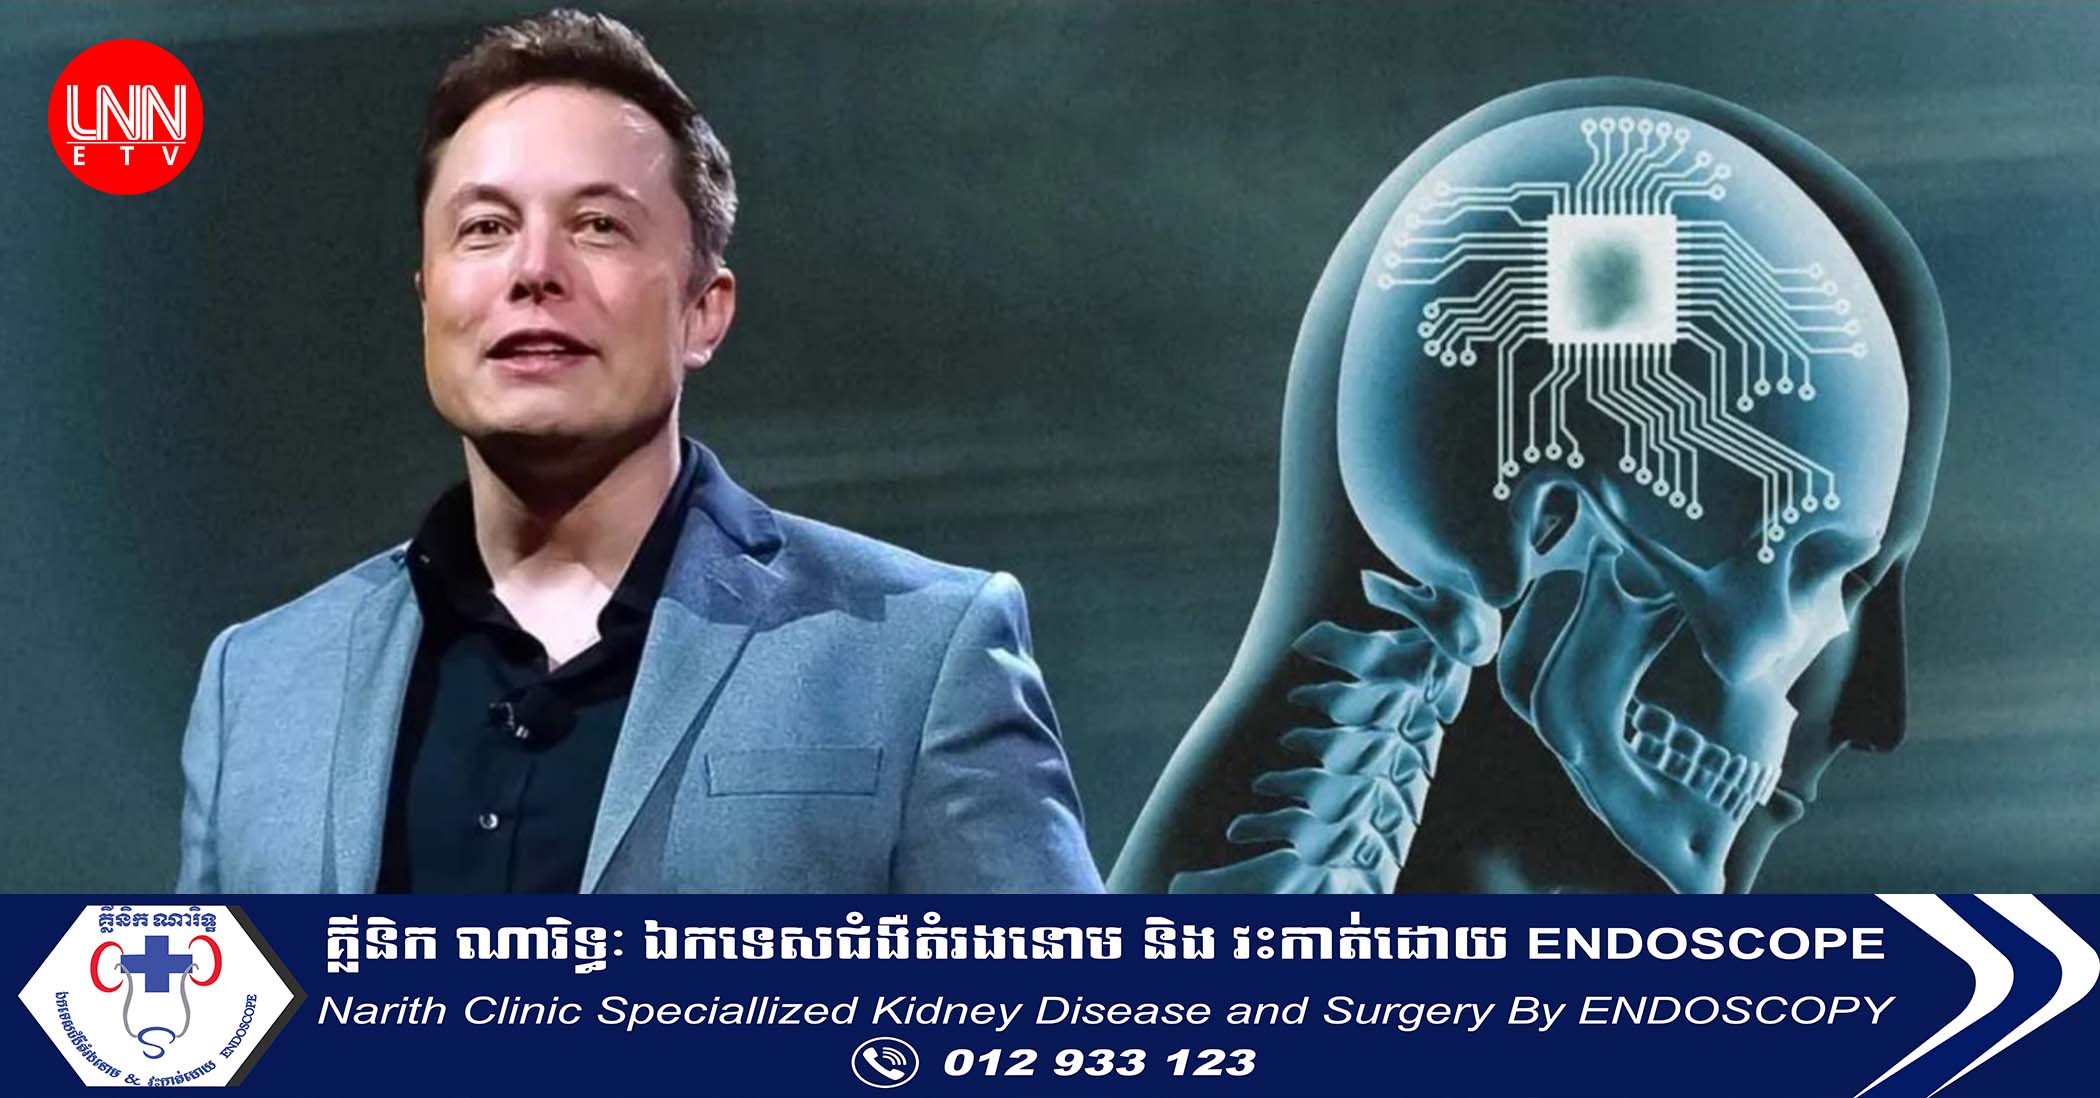 មហាសេដ្ឋី Elon Musk គ្រោងបង្កើត​ក្រុមហ៊ុន AI សាជាថ្មី